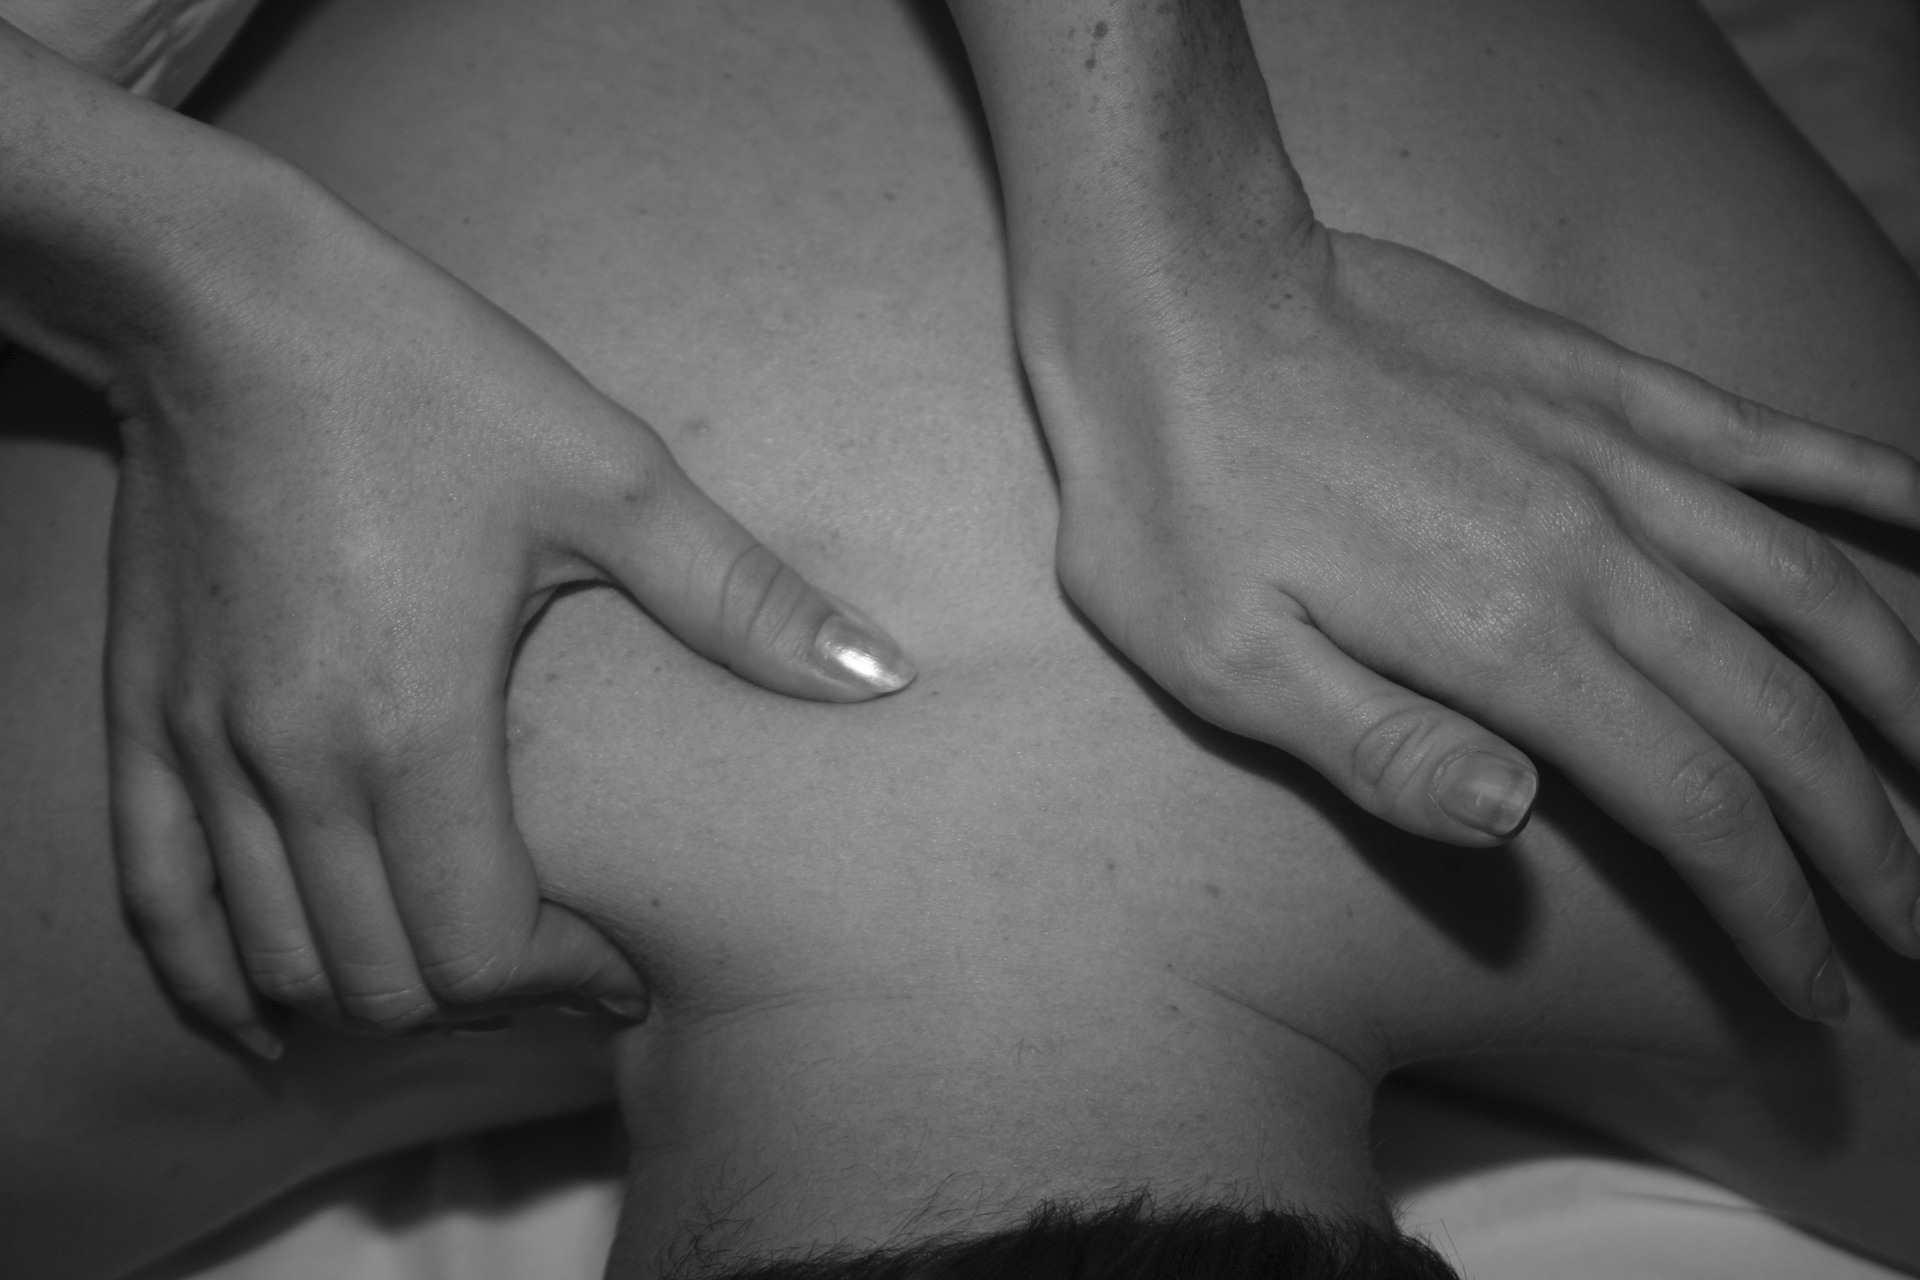 Erotische Massage Vienna – Wie mache ich eine gute Körpermassage?